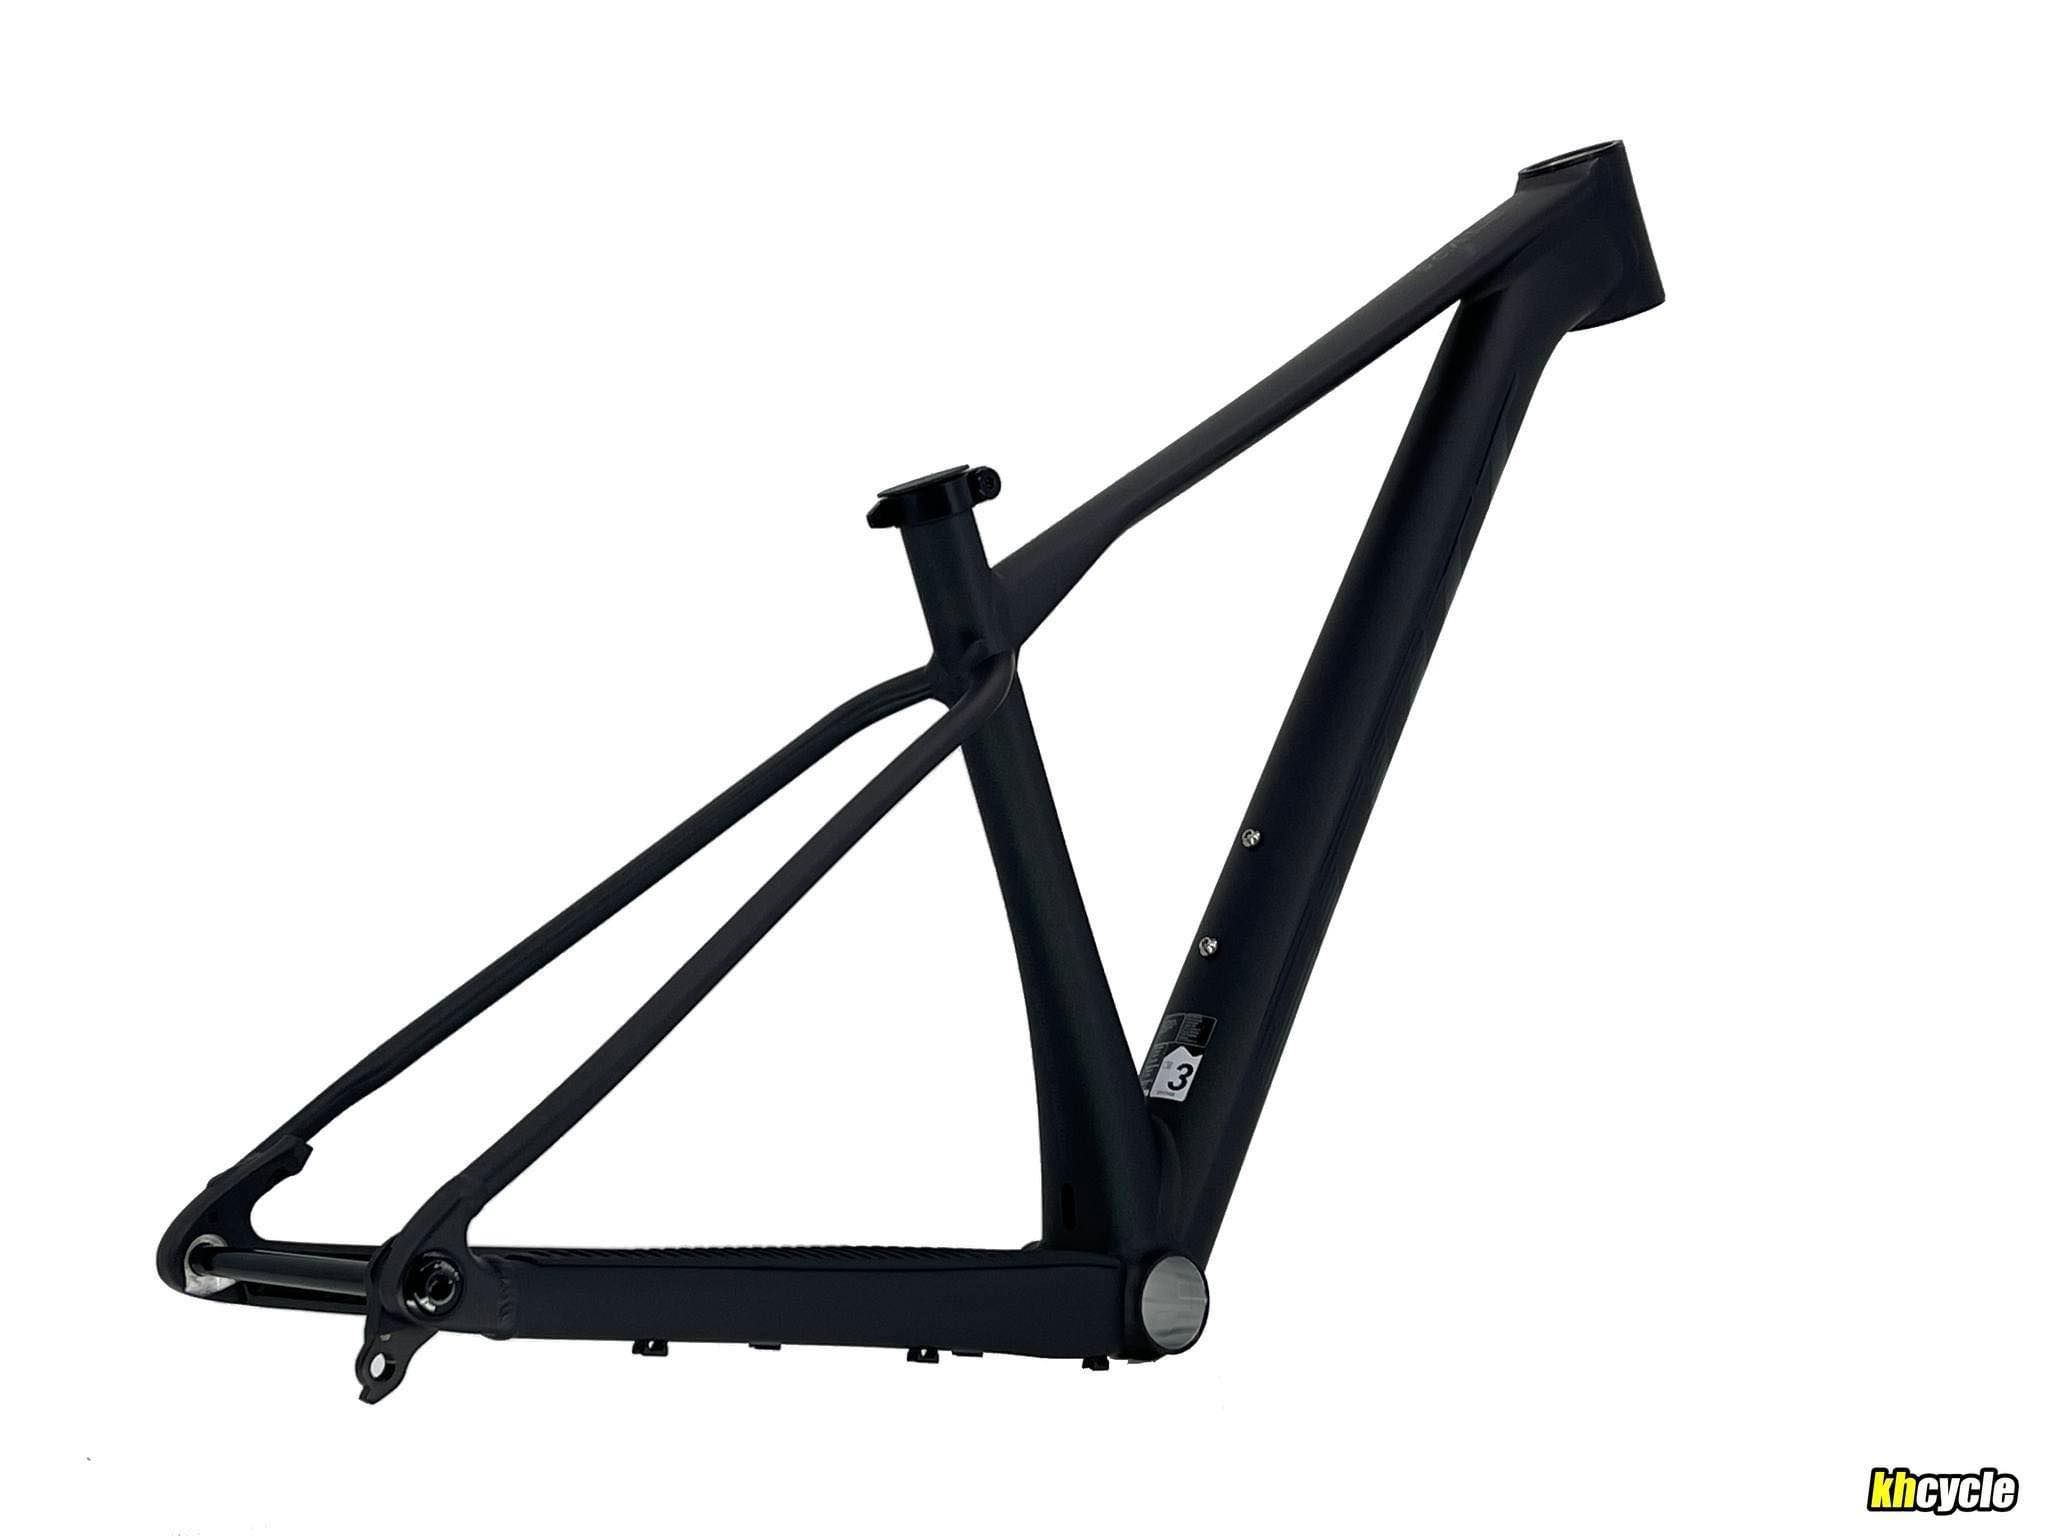  Sườn xe đạp Scott Scale 950 Black -  Boost , 29